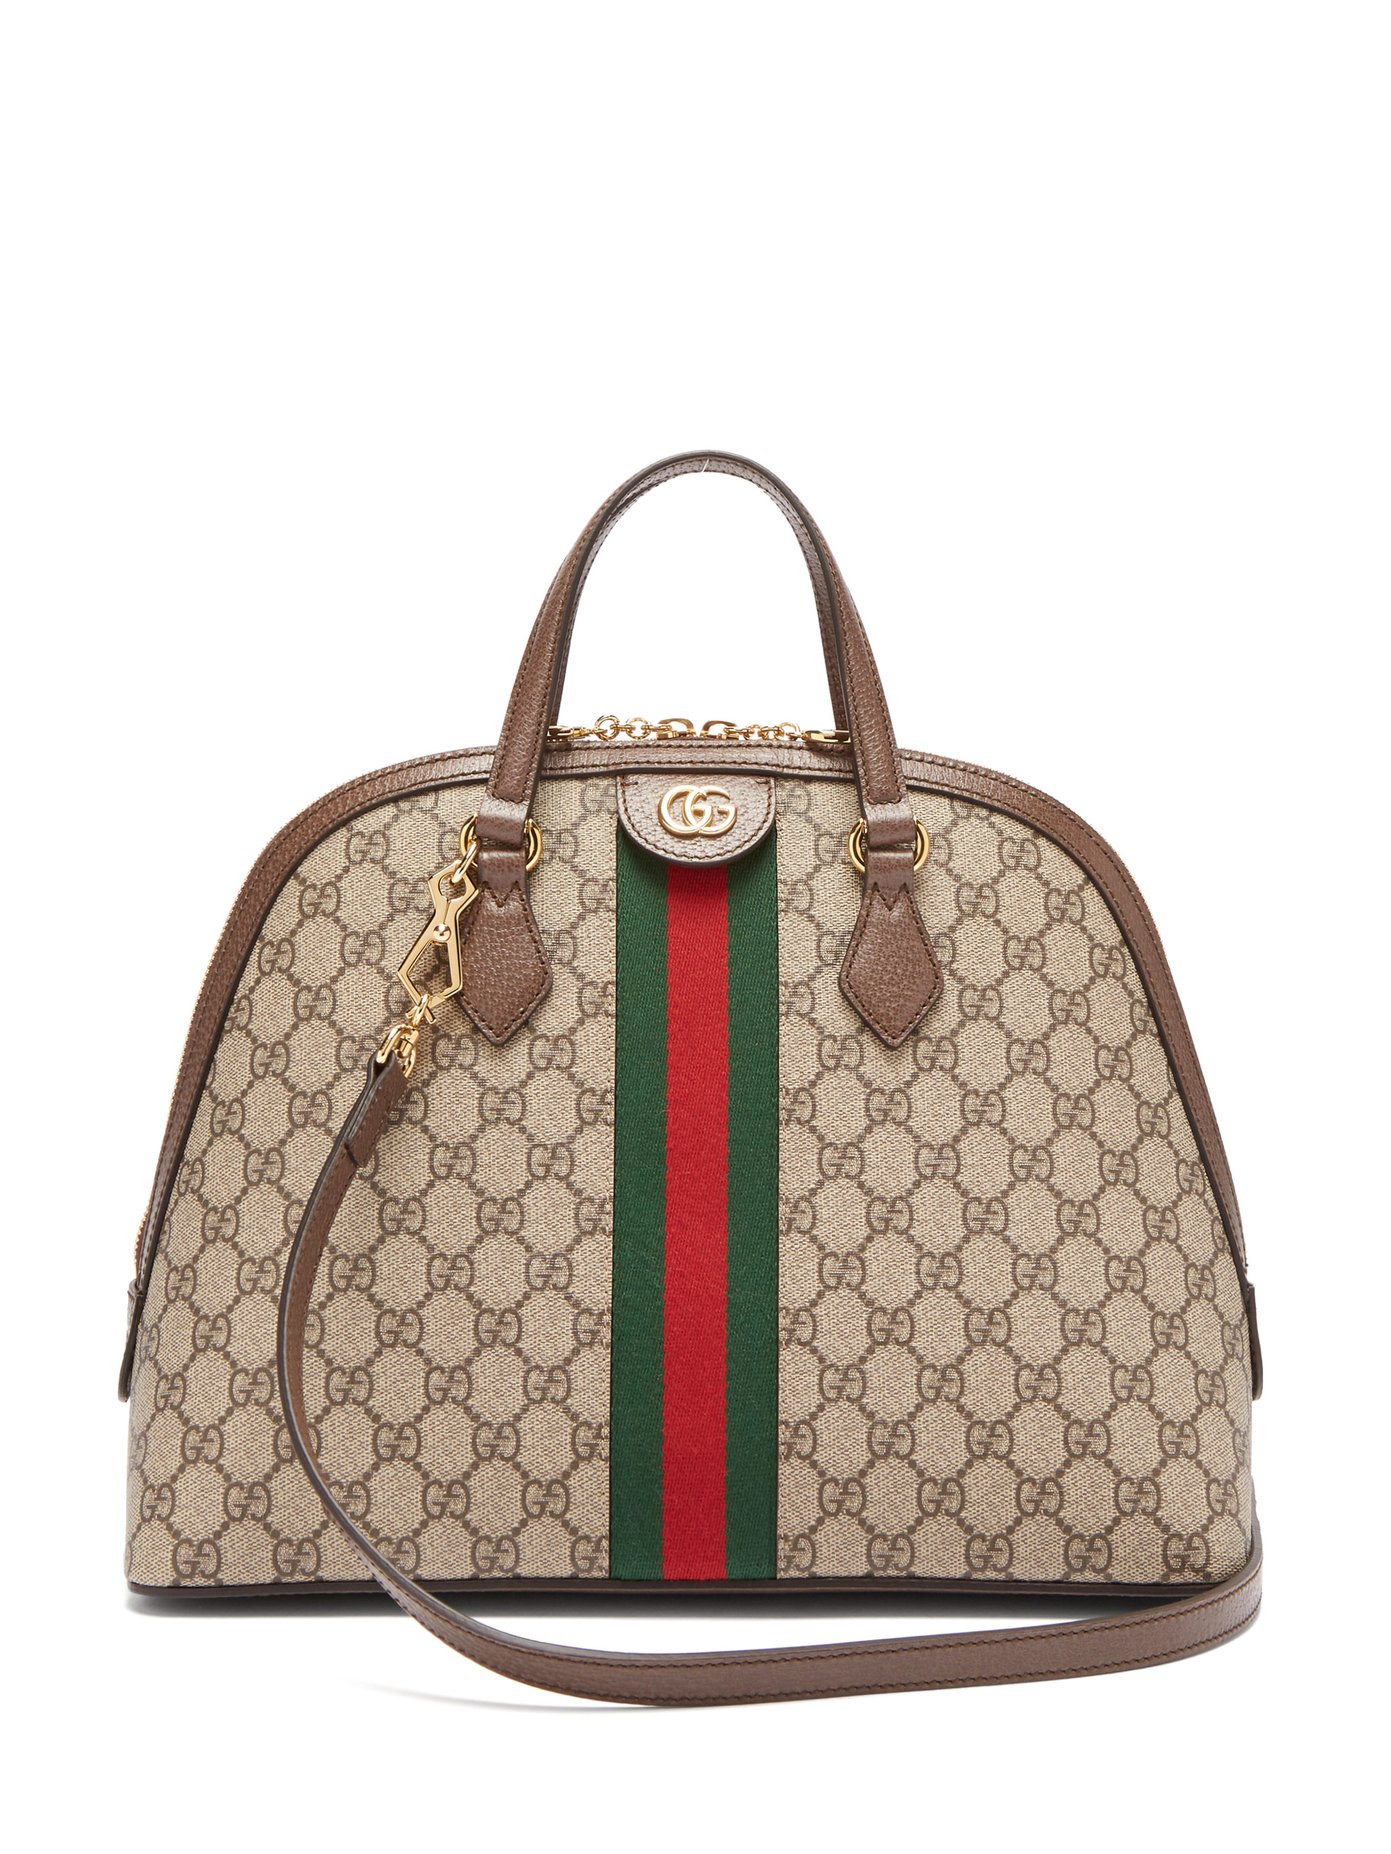 Ophidia GG Supreme tote bag | Gucci 